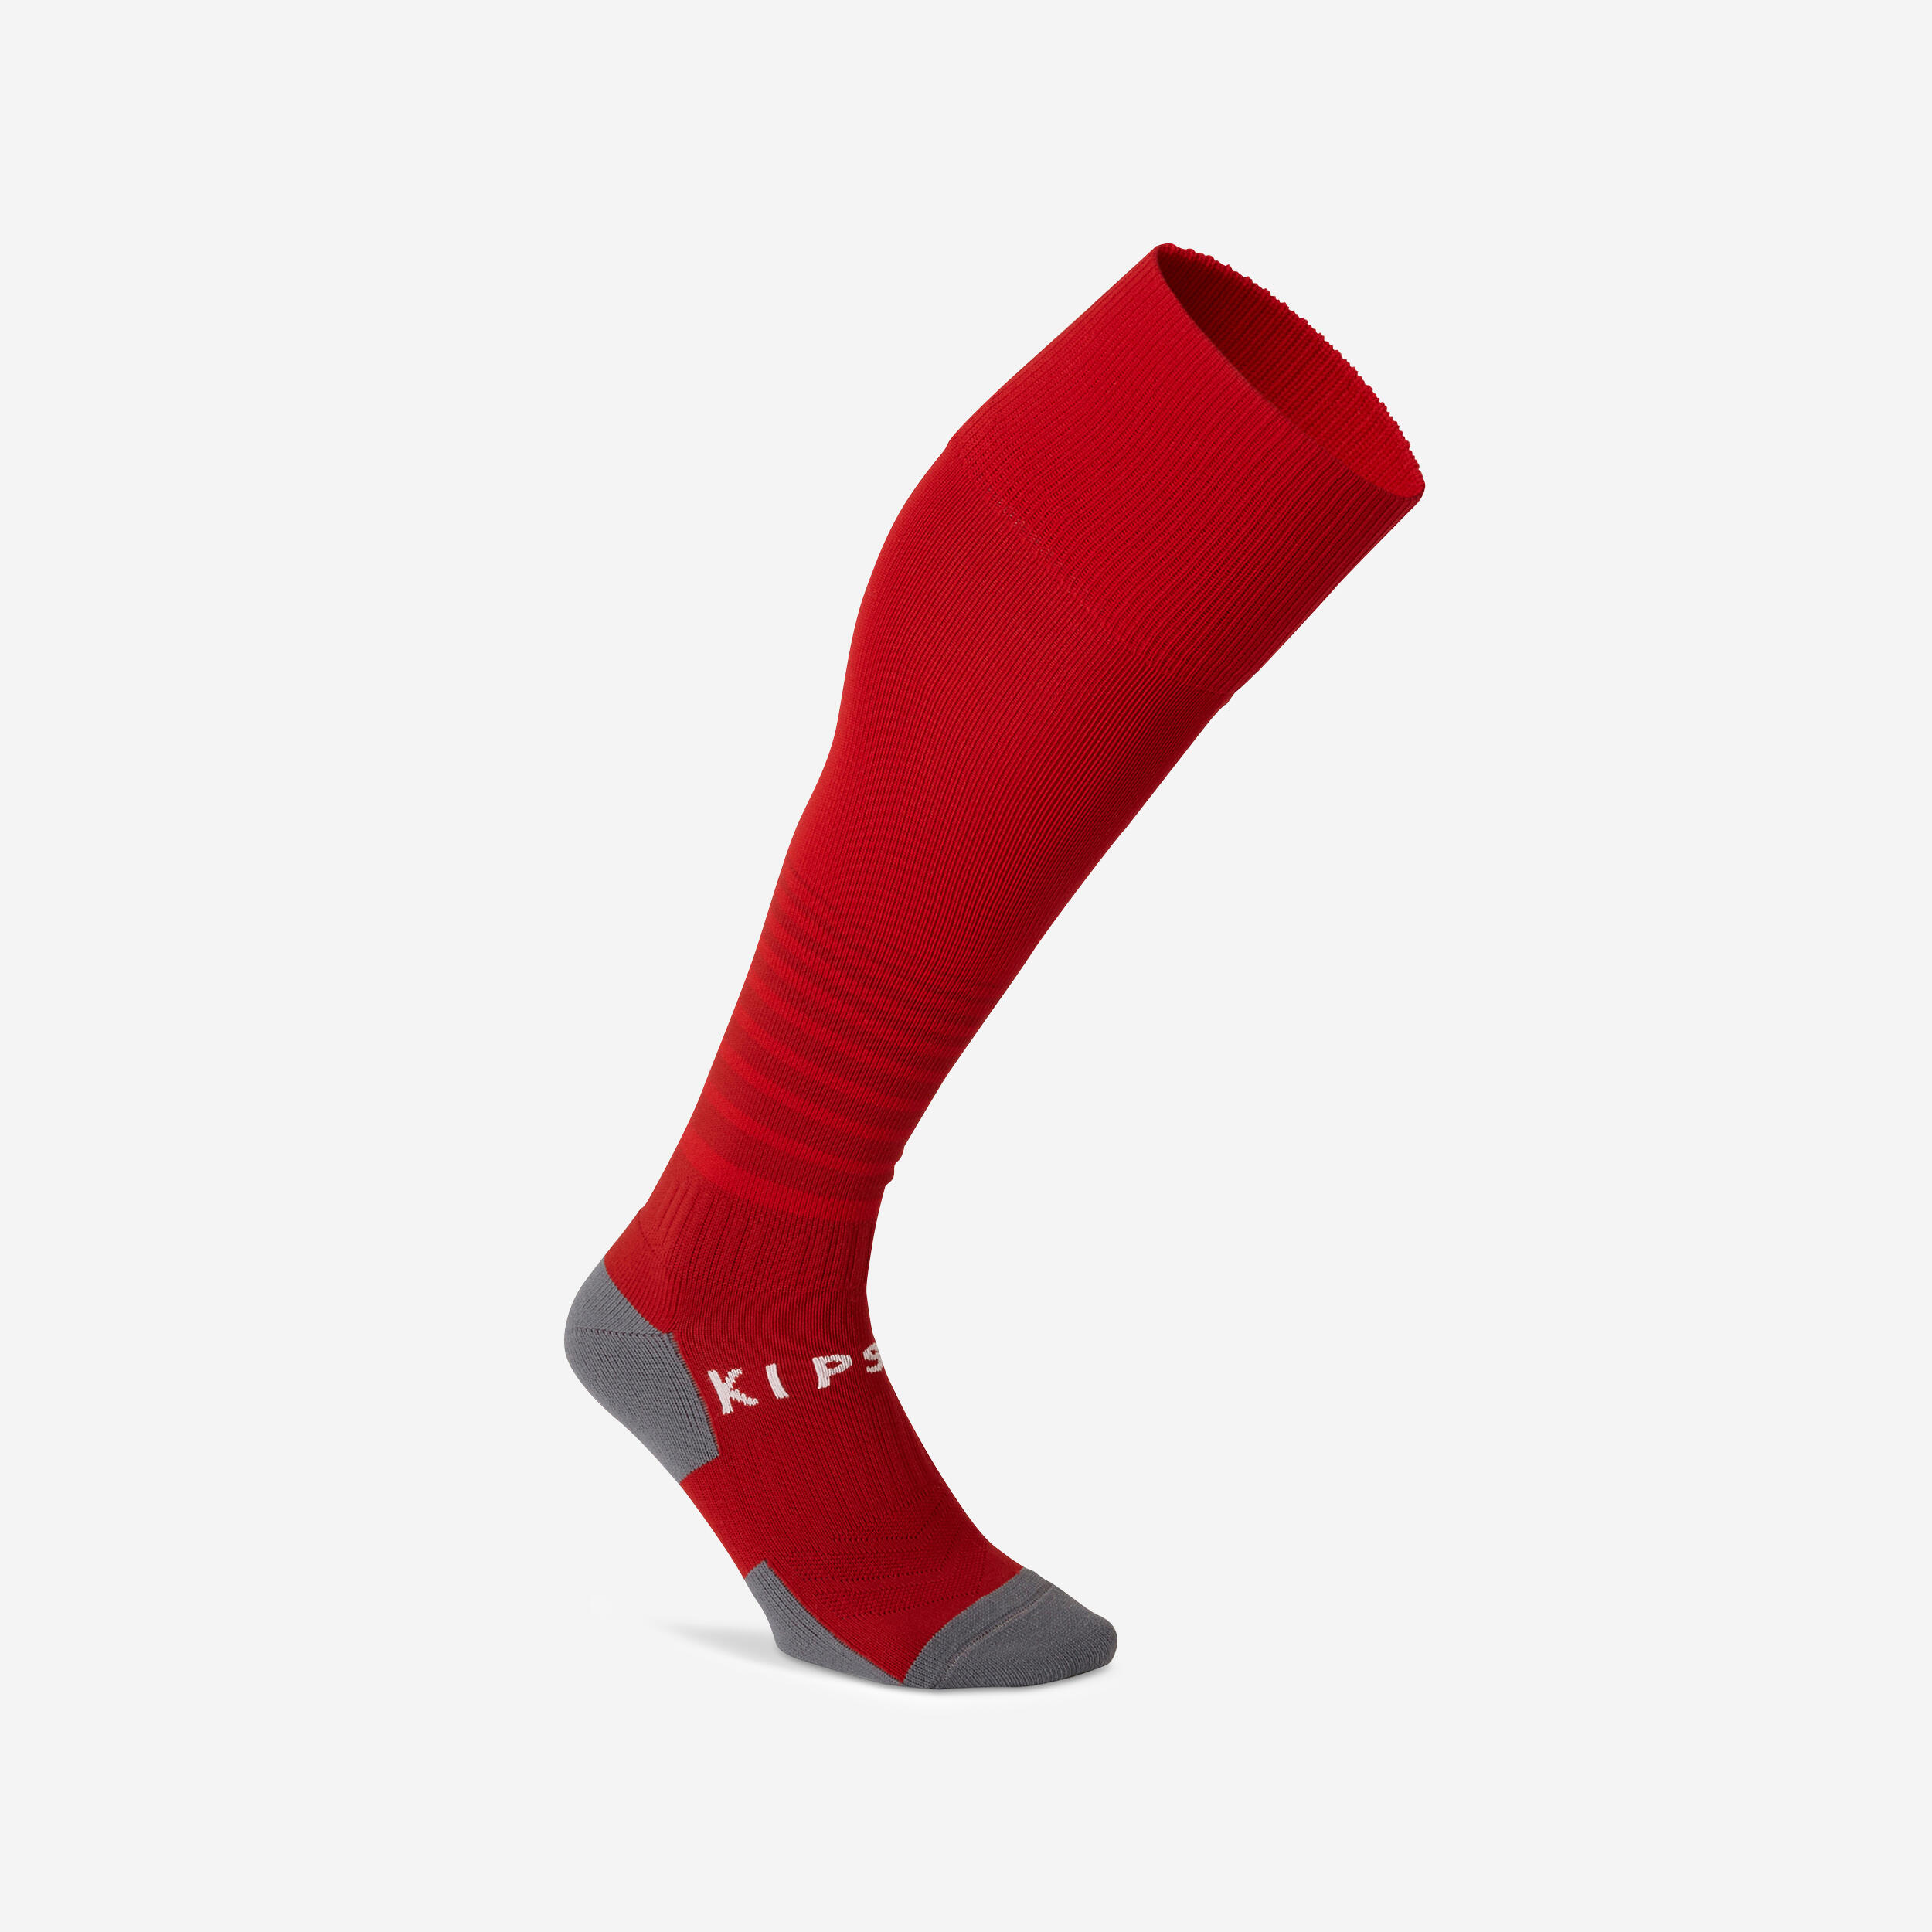 KIPSTA Football Socks Viralto Club - Red